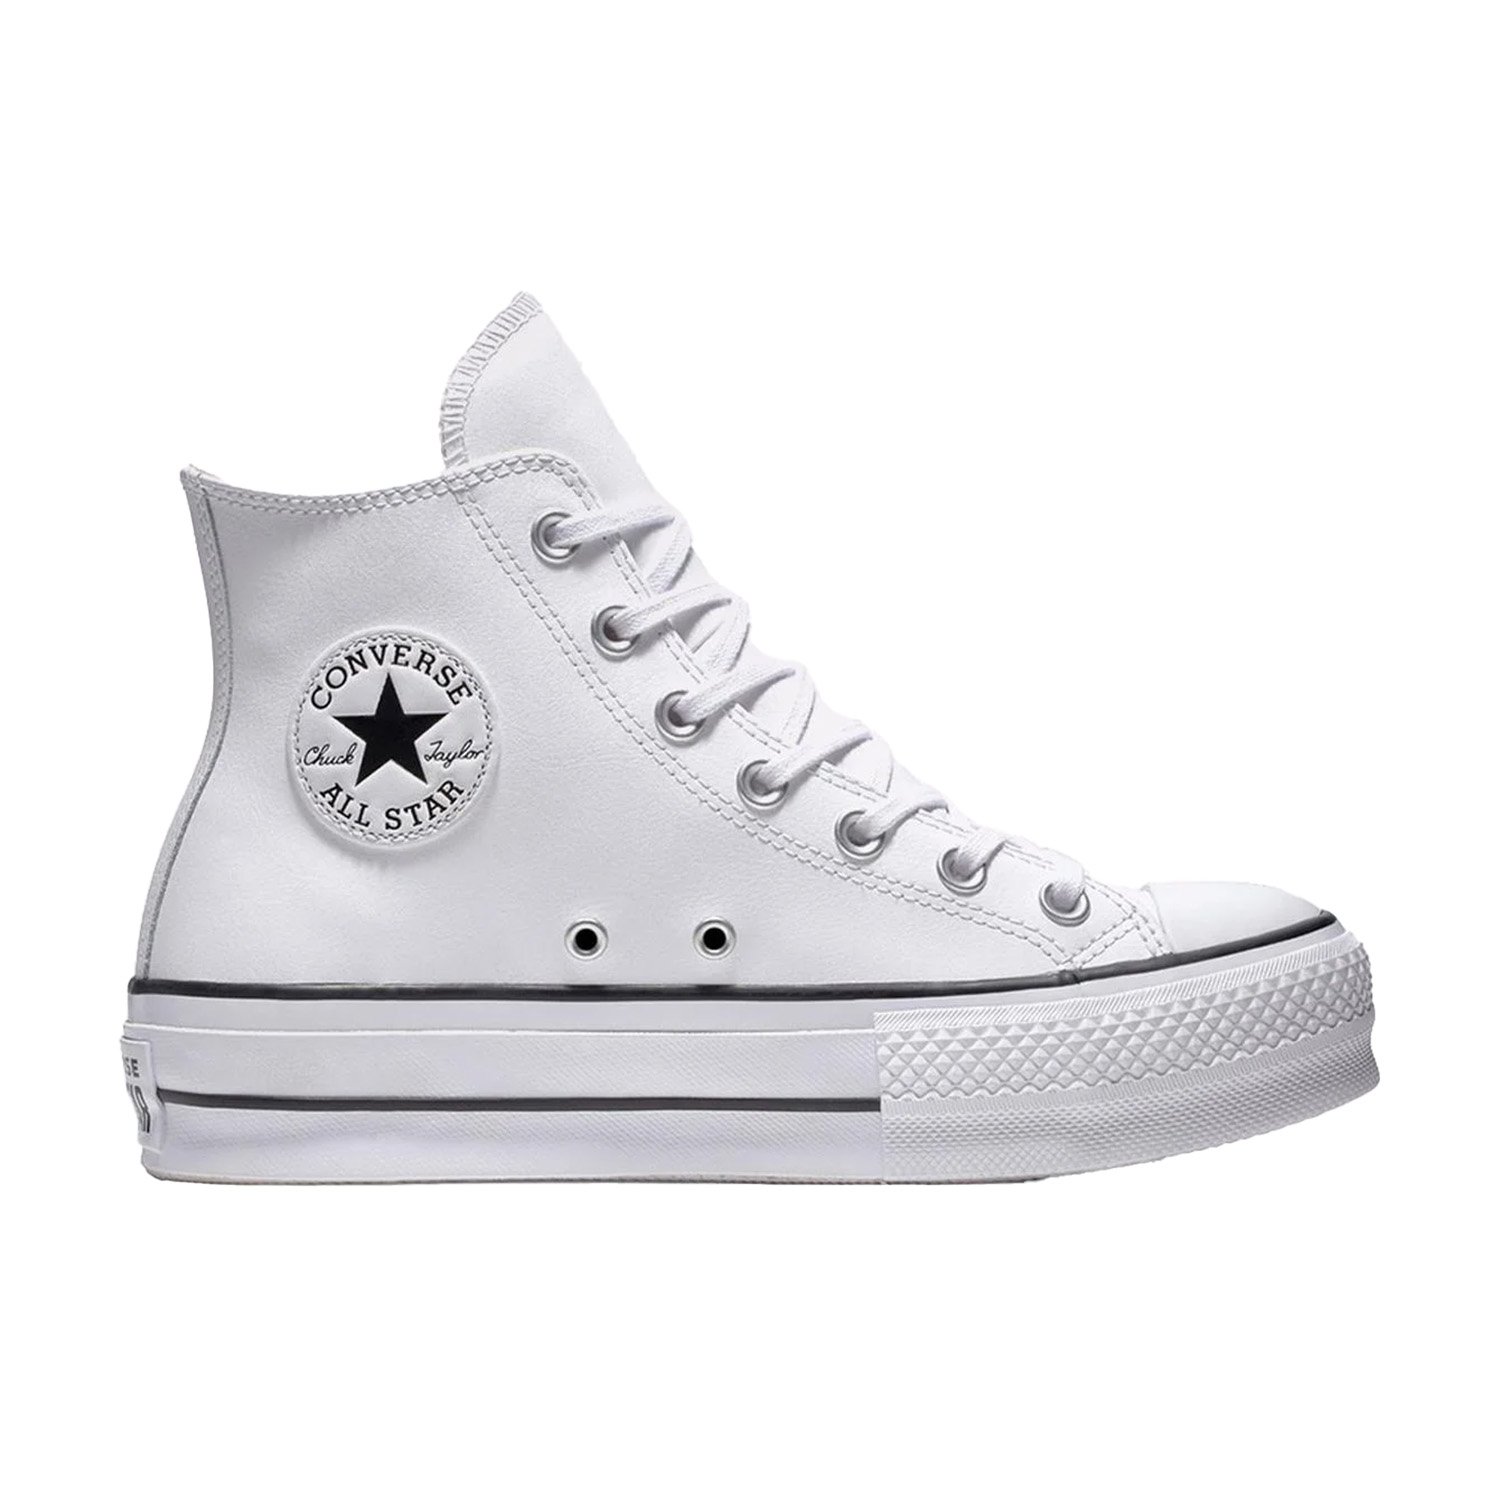 Converse Chuck Taylor All Star Leather Platform Kadın Ayakkabı - Beyaz - 1